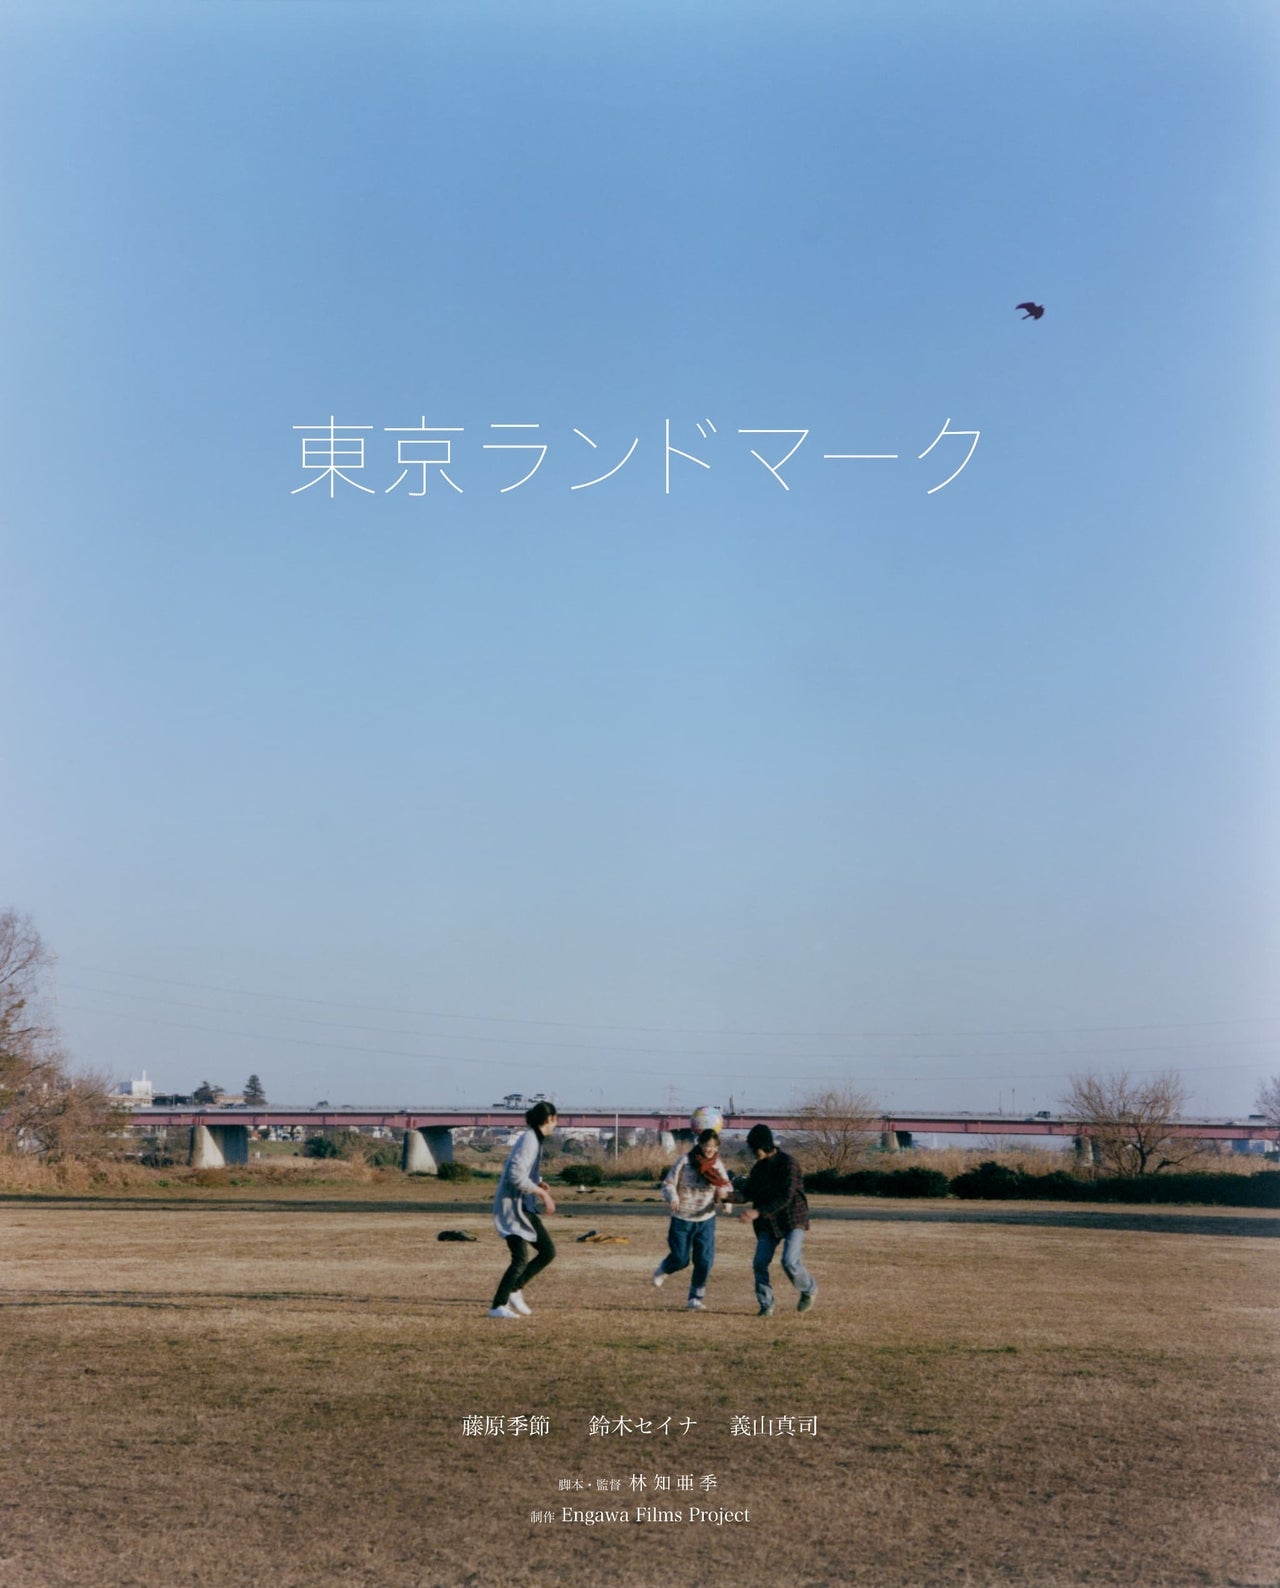 藤原季節、幻の初主演映画「東京ランドマーク」5月18日から劇場公開決定「愛される映画です」